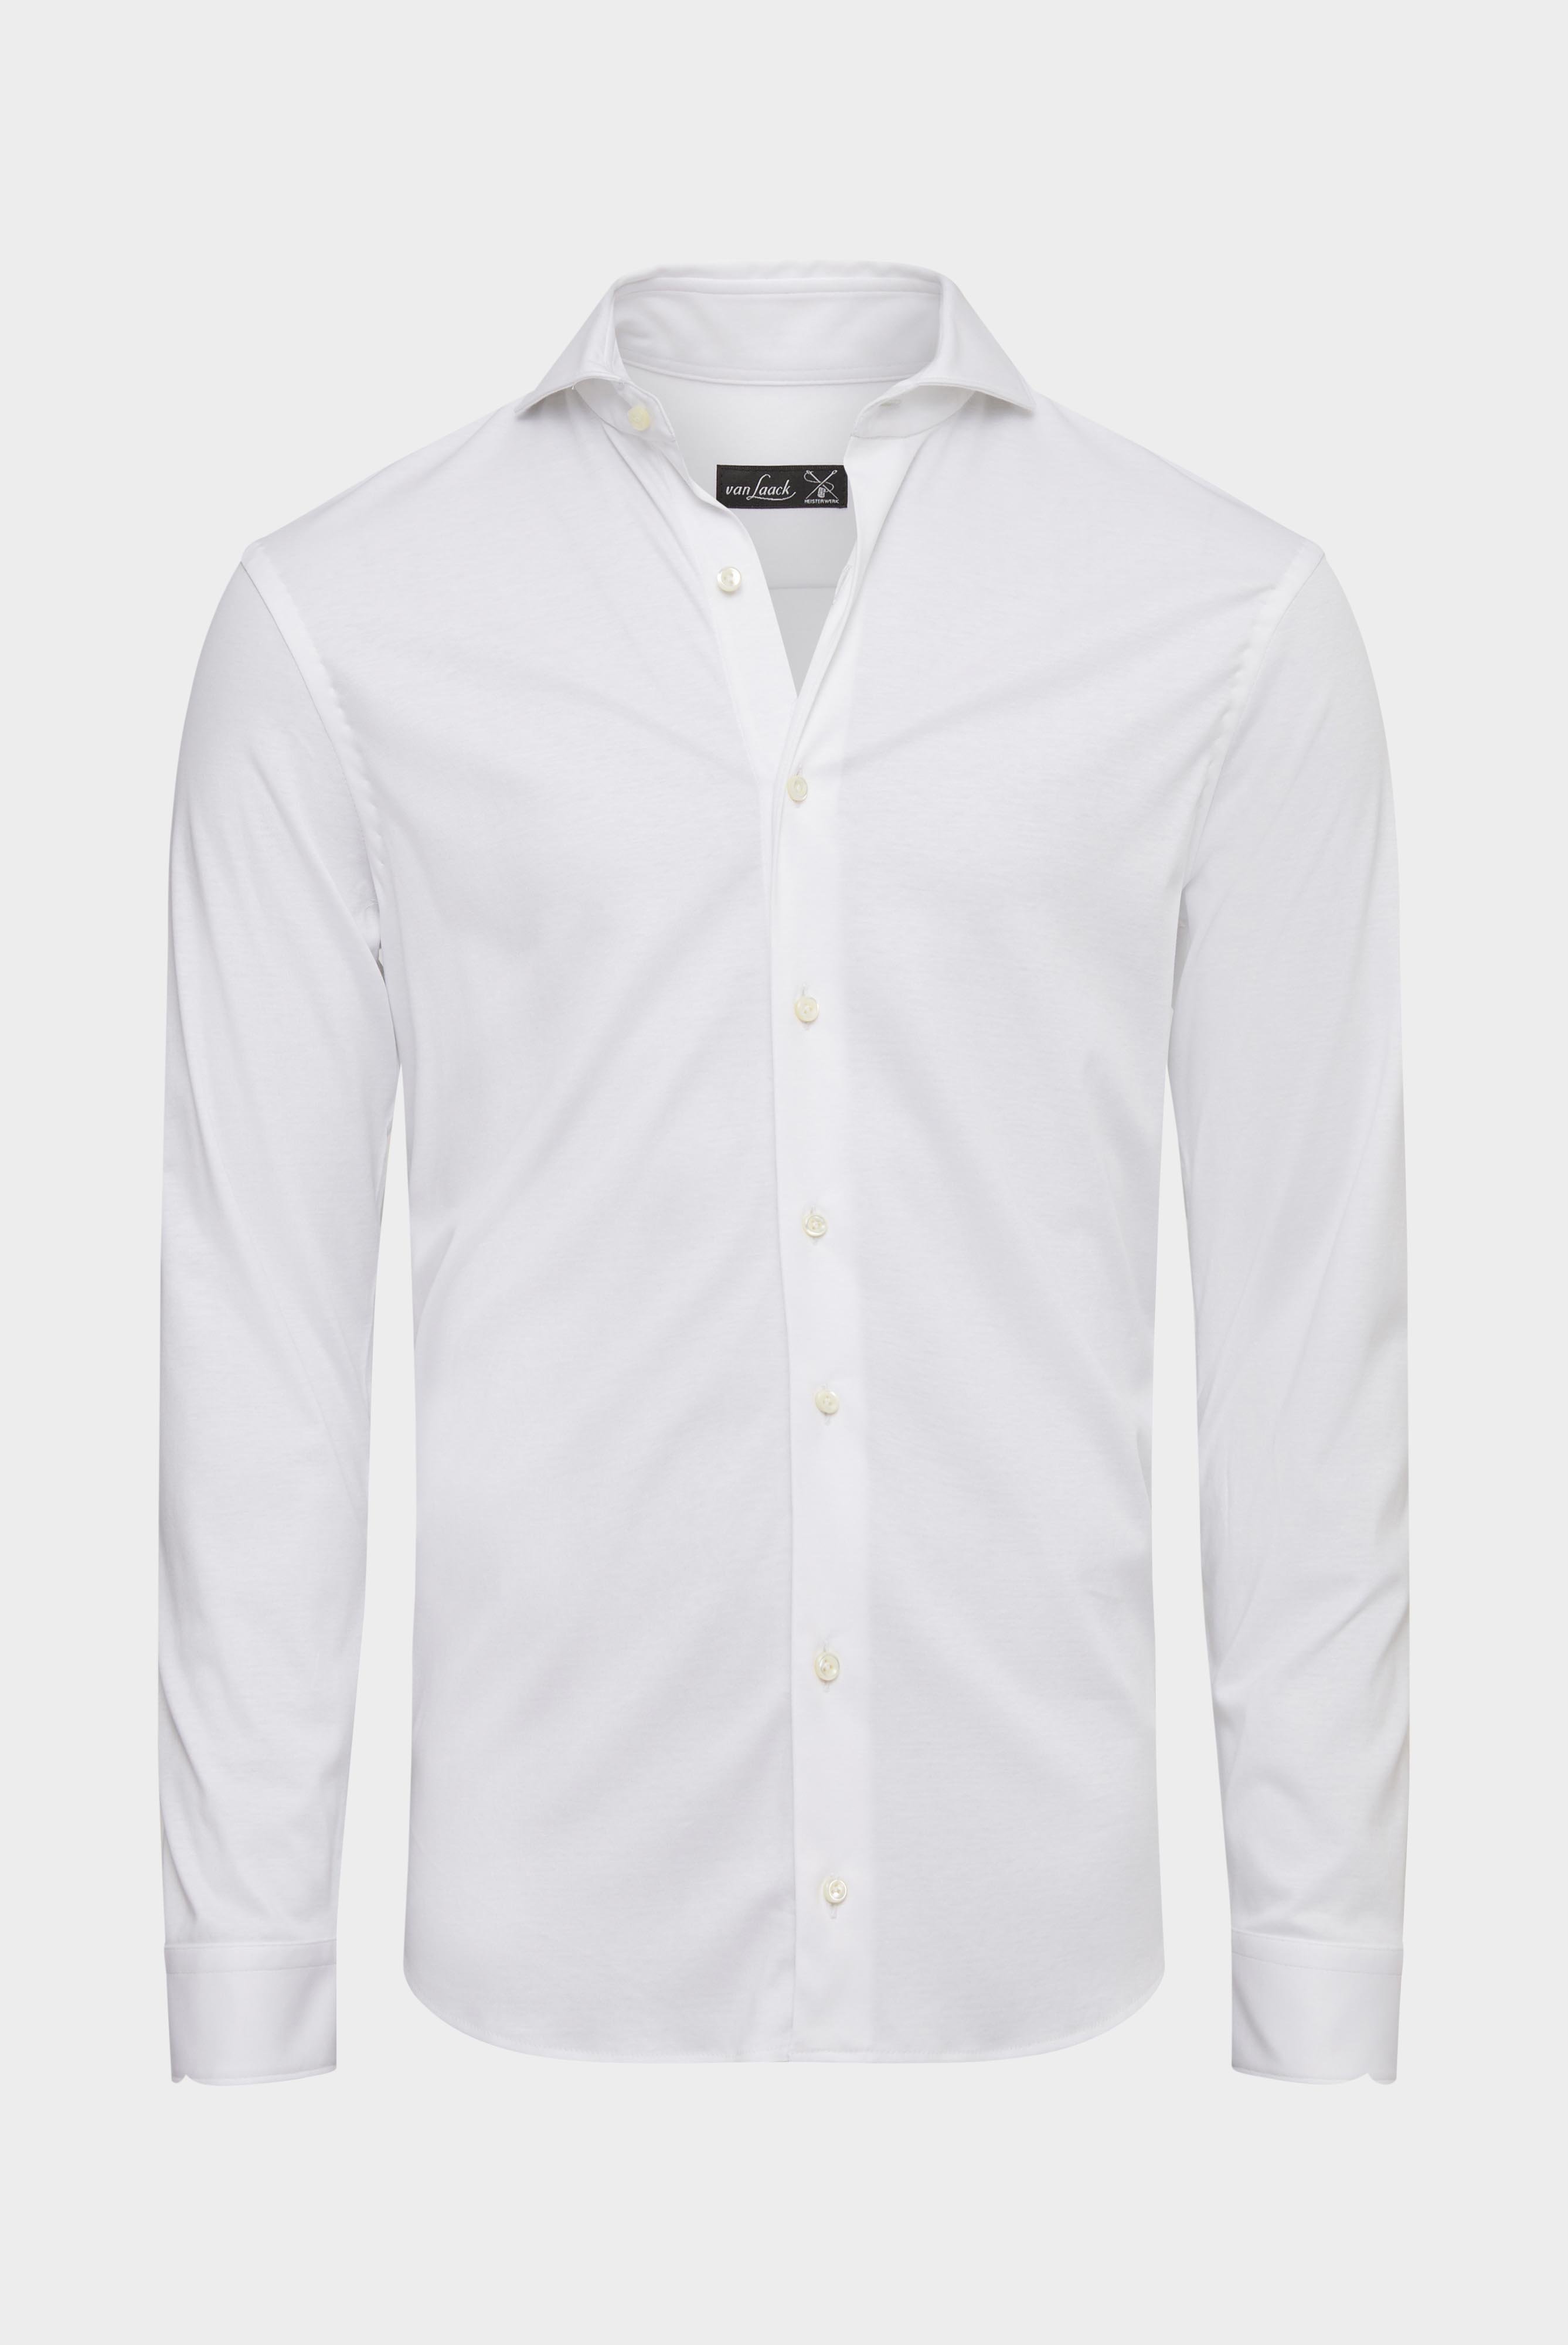 Jersey Hemden+Jersey Hemd aus Schweizer Baumwolle Slim Fit+20.1682.UC.180031.000.X3L